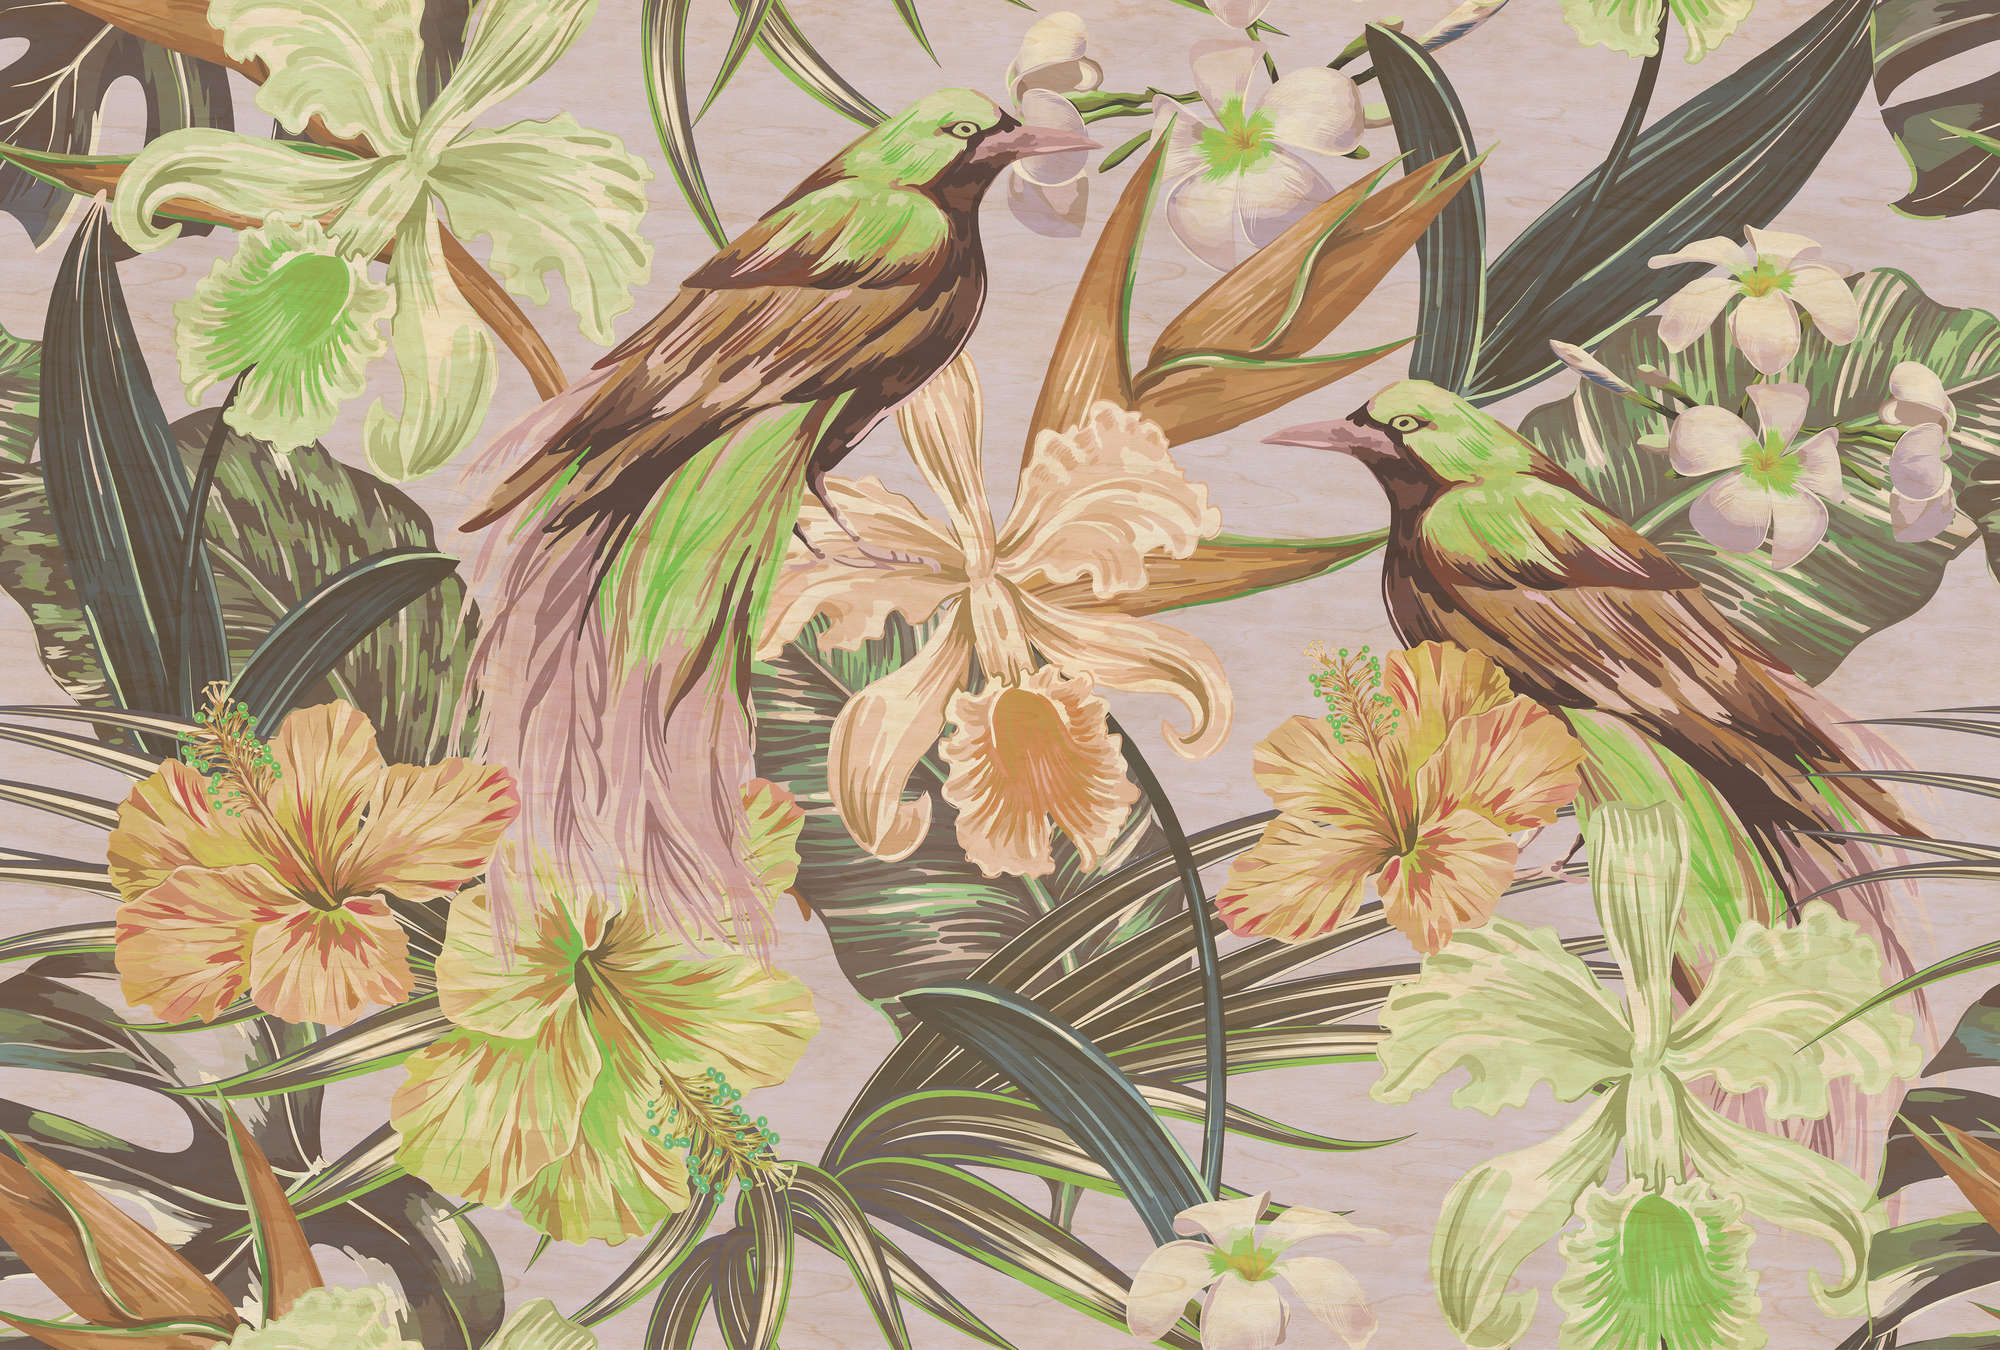             Exotic birds 2 - Papier peint oiseaux exotiques & plantes - À structure grattée - Beige, Vert | Intissé lisse mat
        